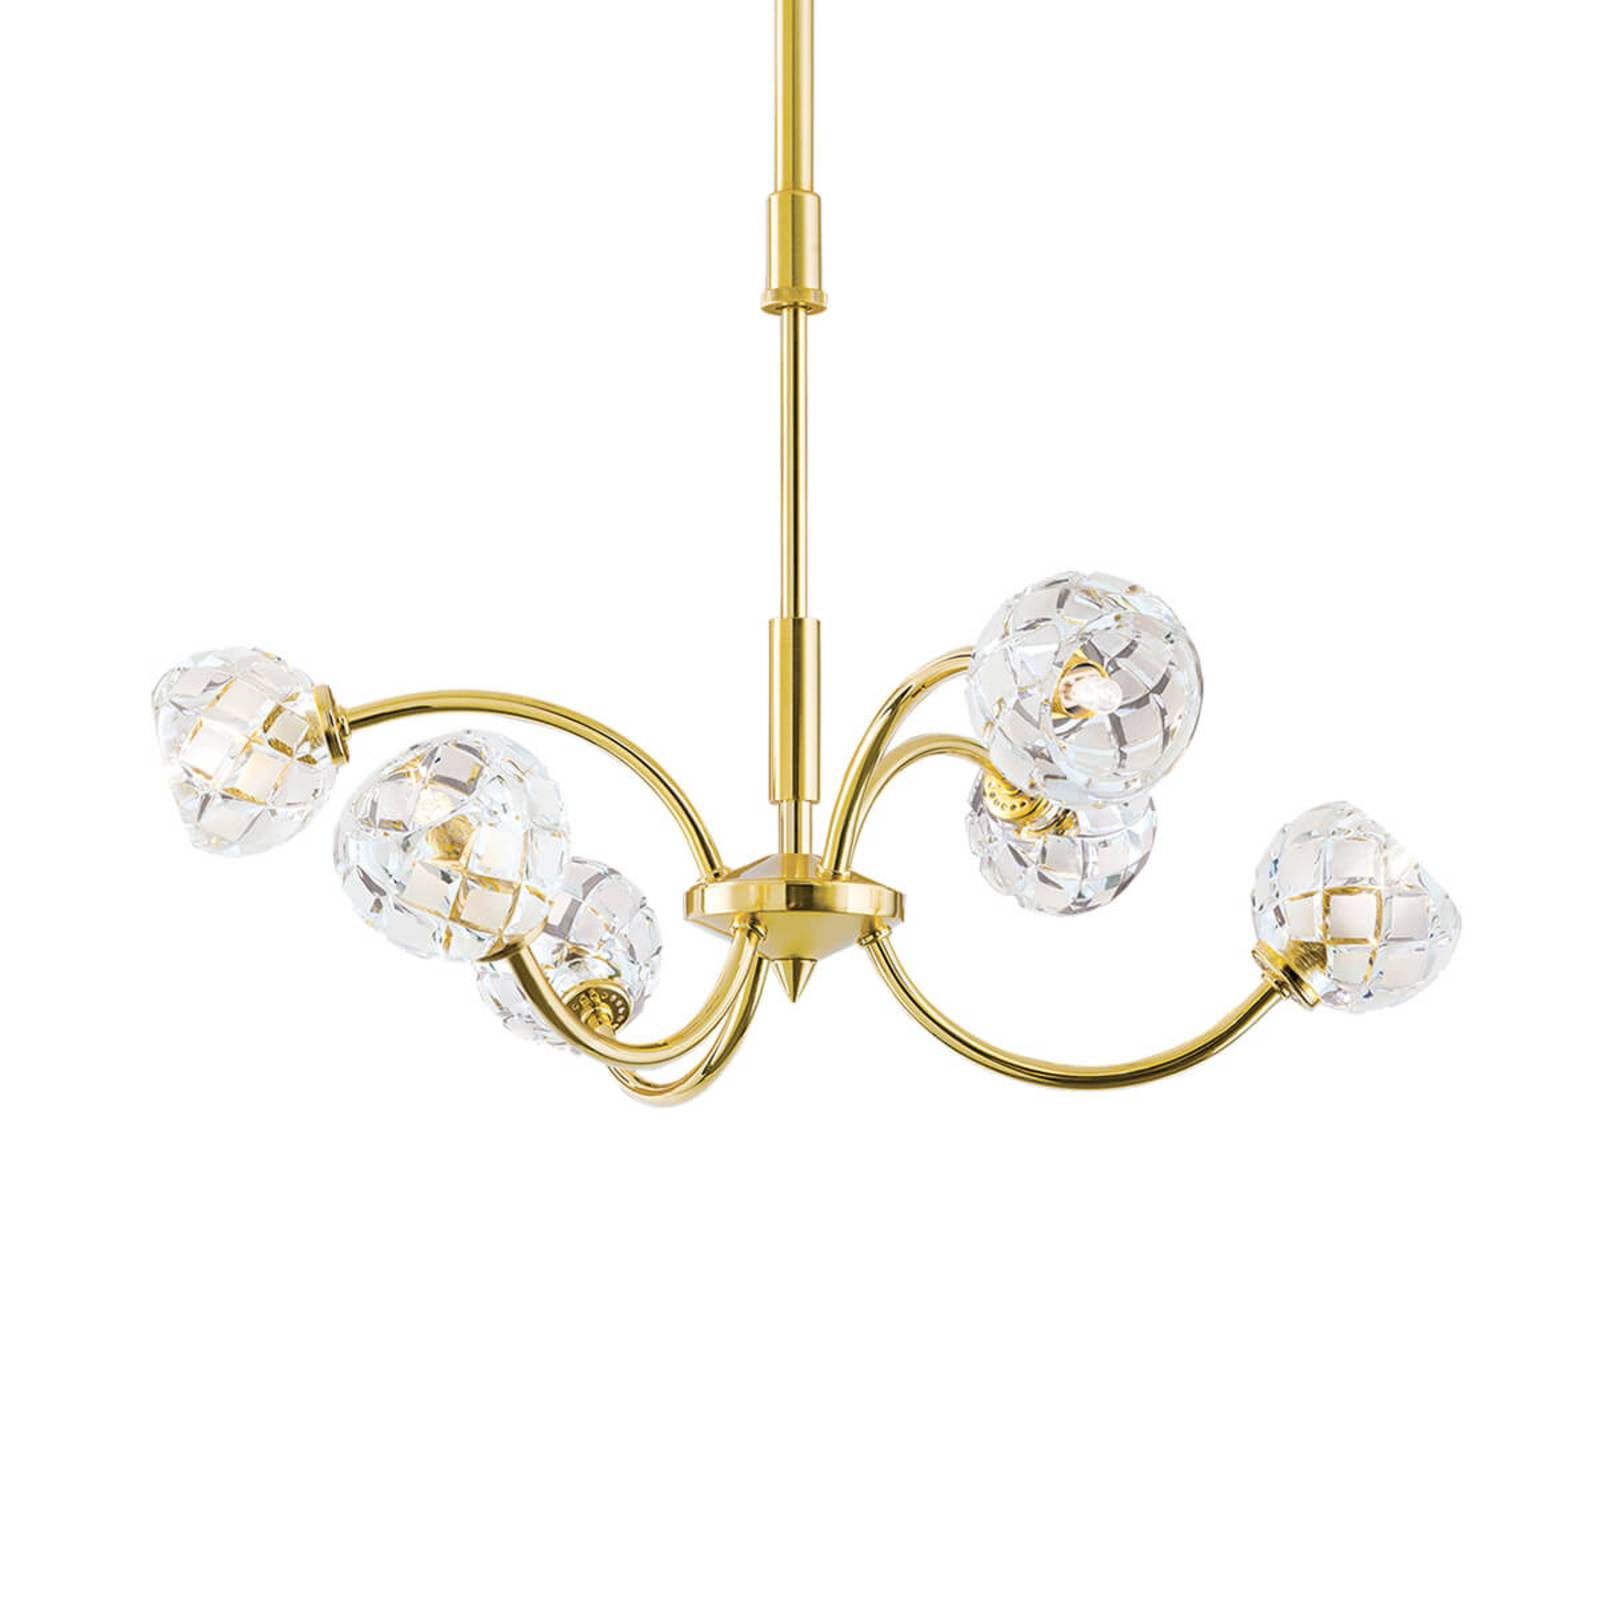 Loodkristal-hanglamp Maderno, goud, 51cm